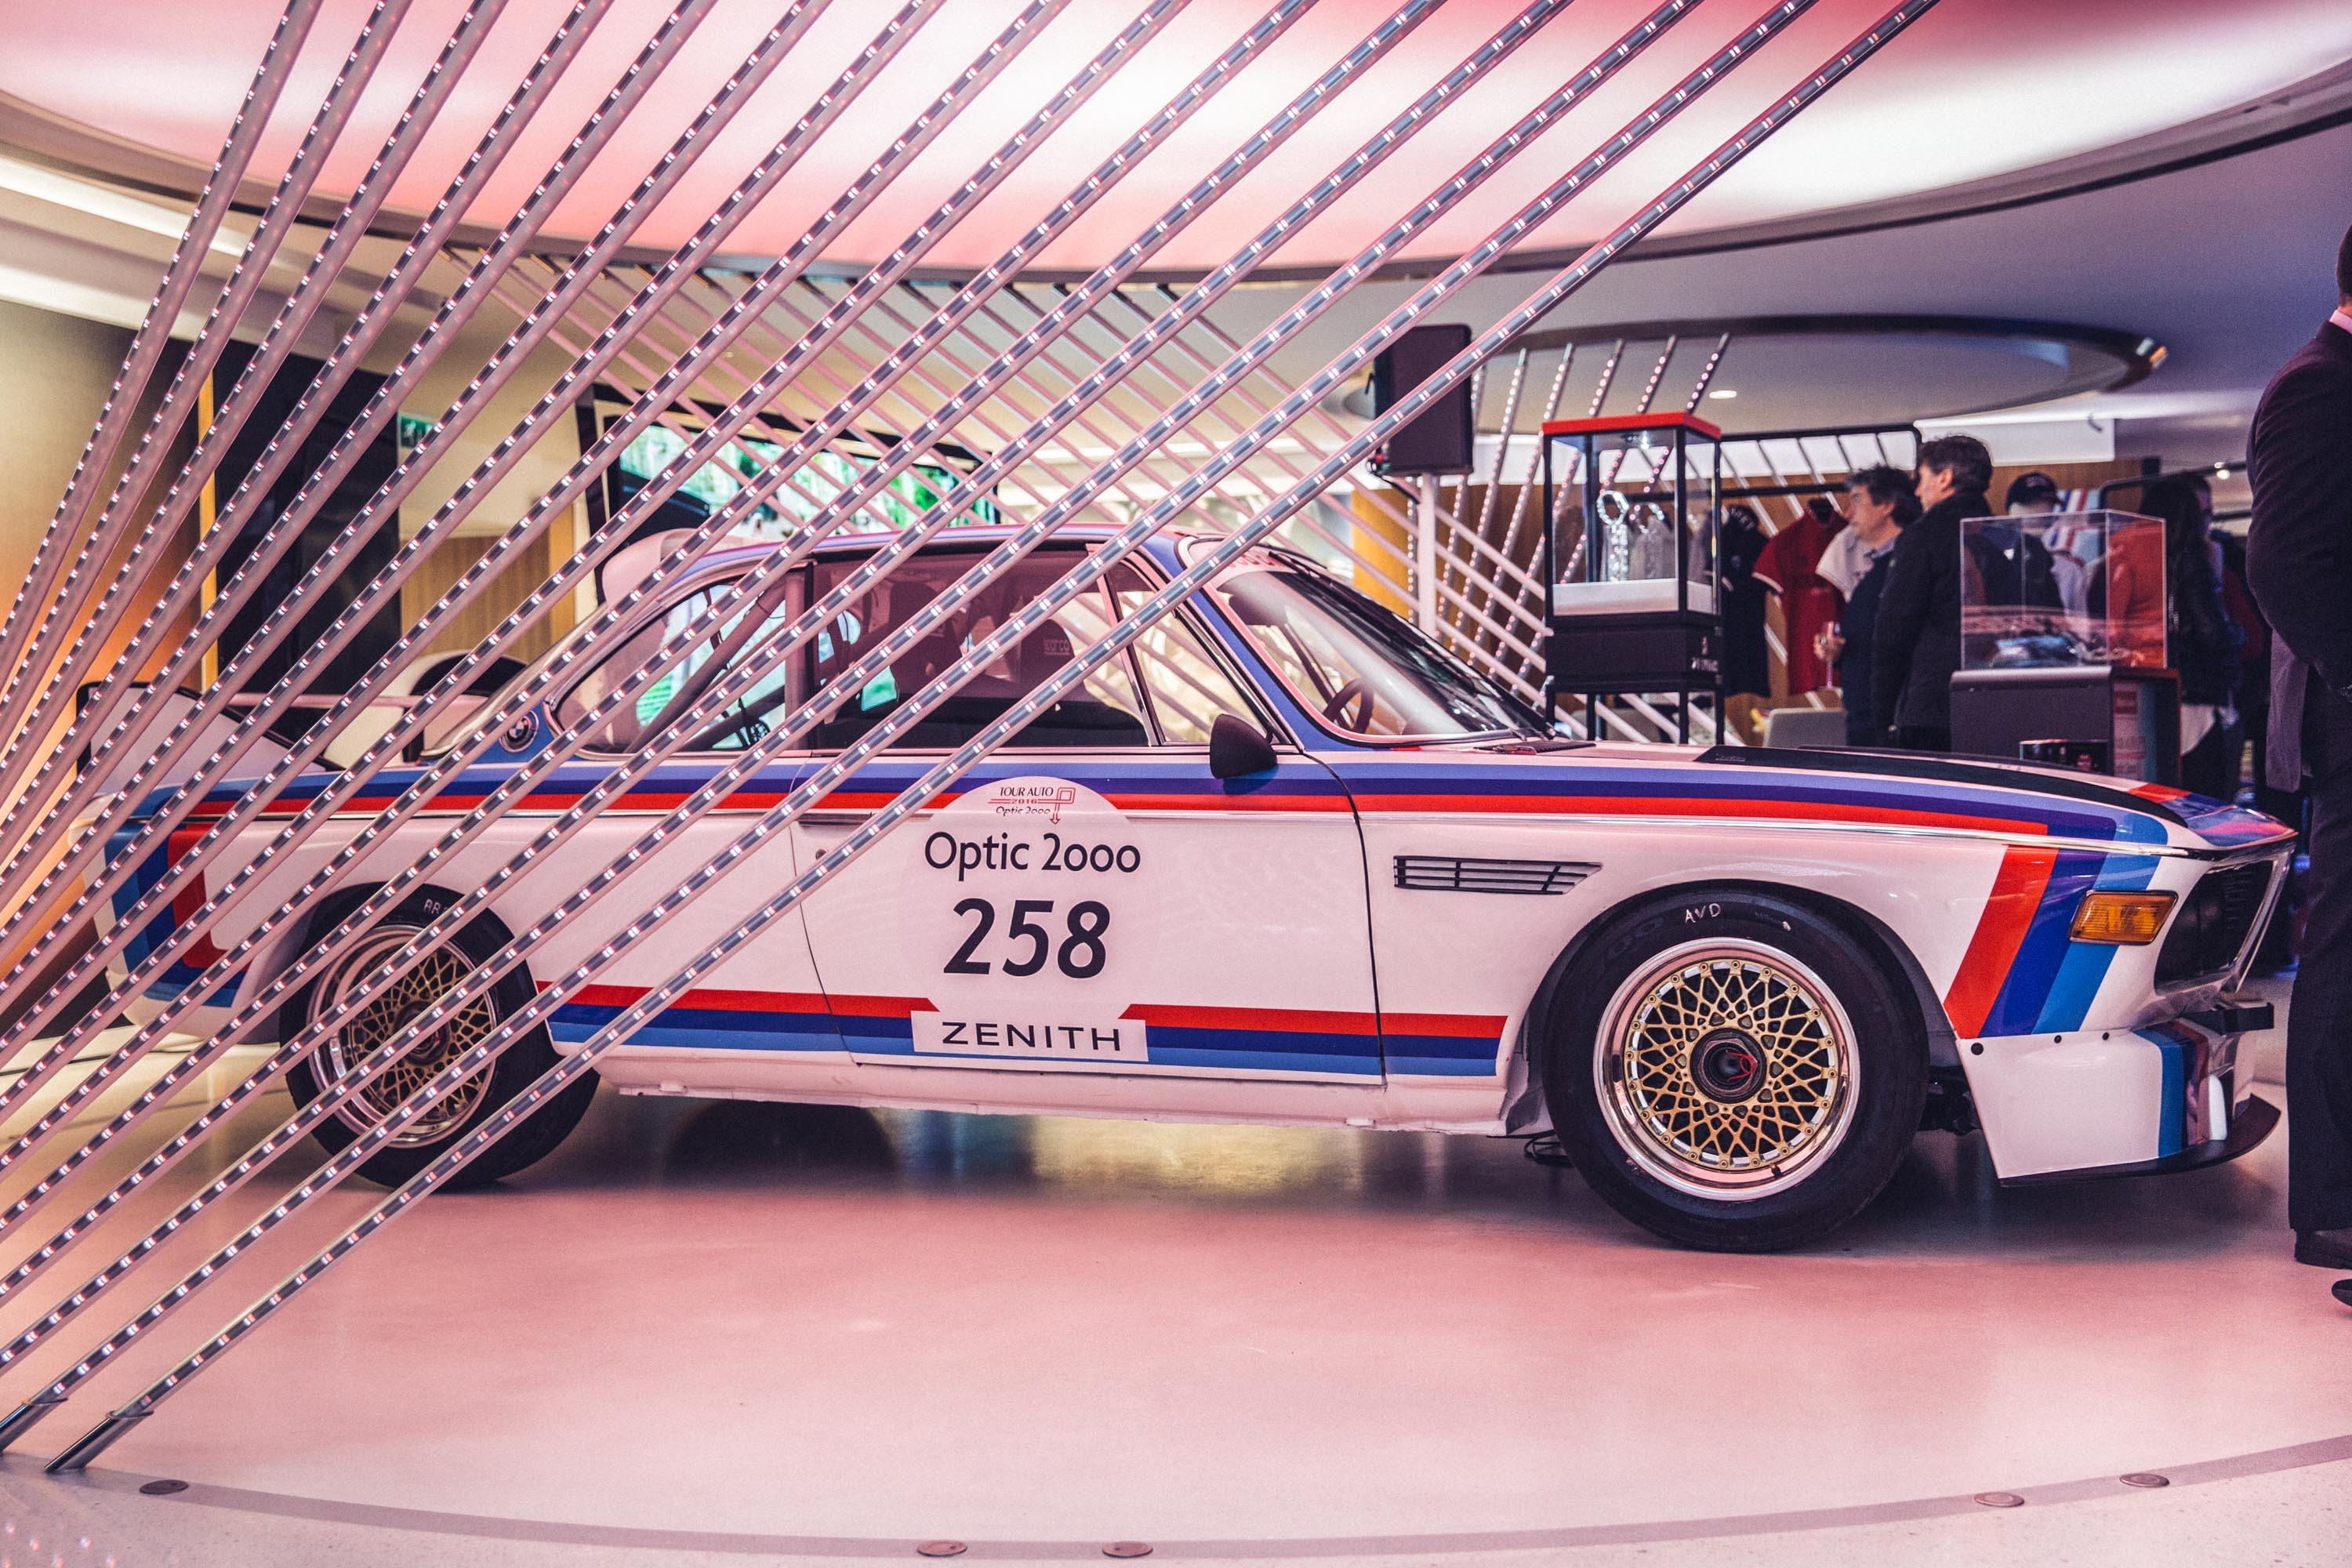 真力时旗舰系列1969环法汽车拉力赛特别款腕表 致敬传奇赛事